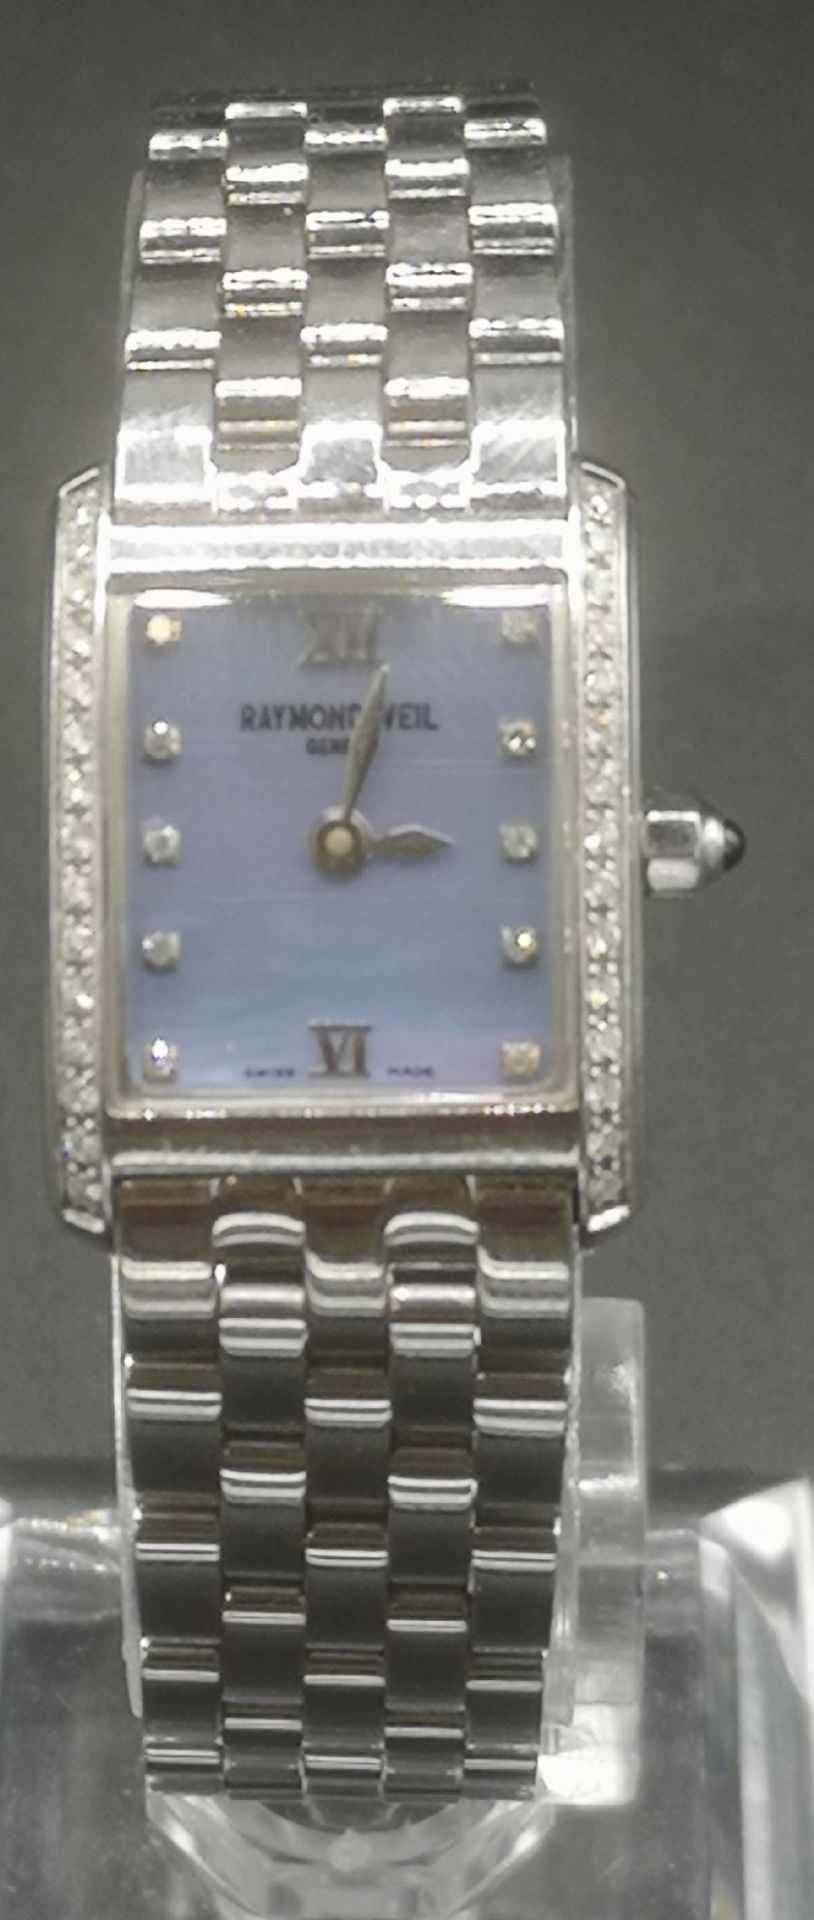 Raymond Weil wrist watch